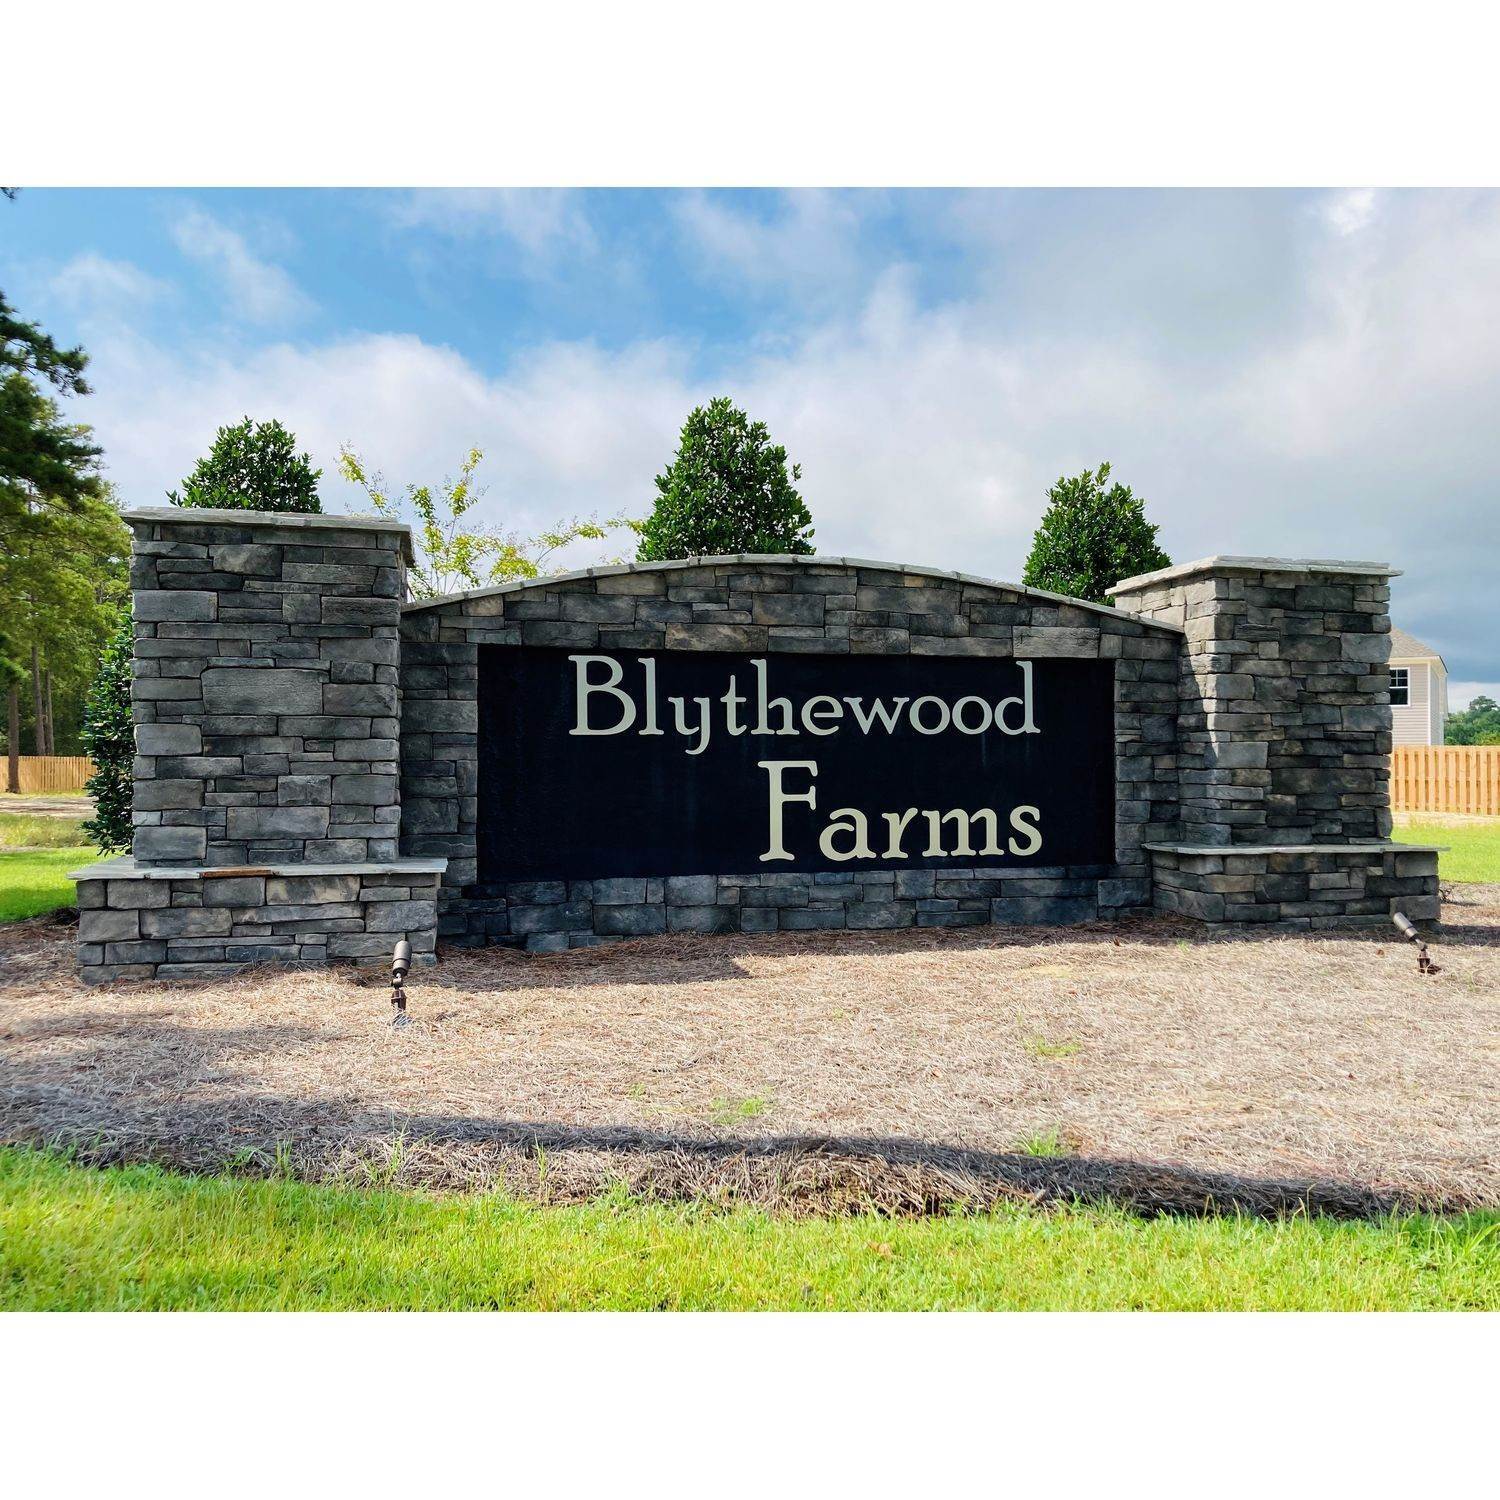 2. Blythewood Farms edificio en 1104 Deep Creek Road, Blythewood, SC 29016